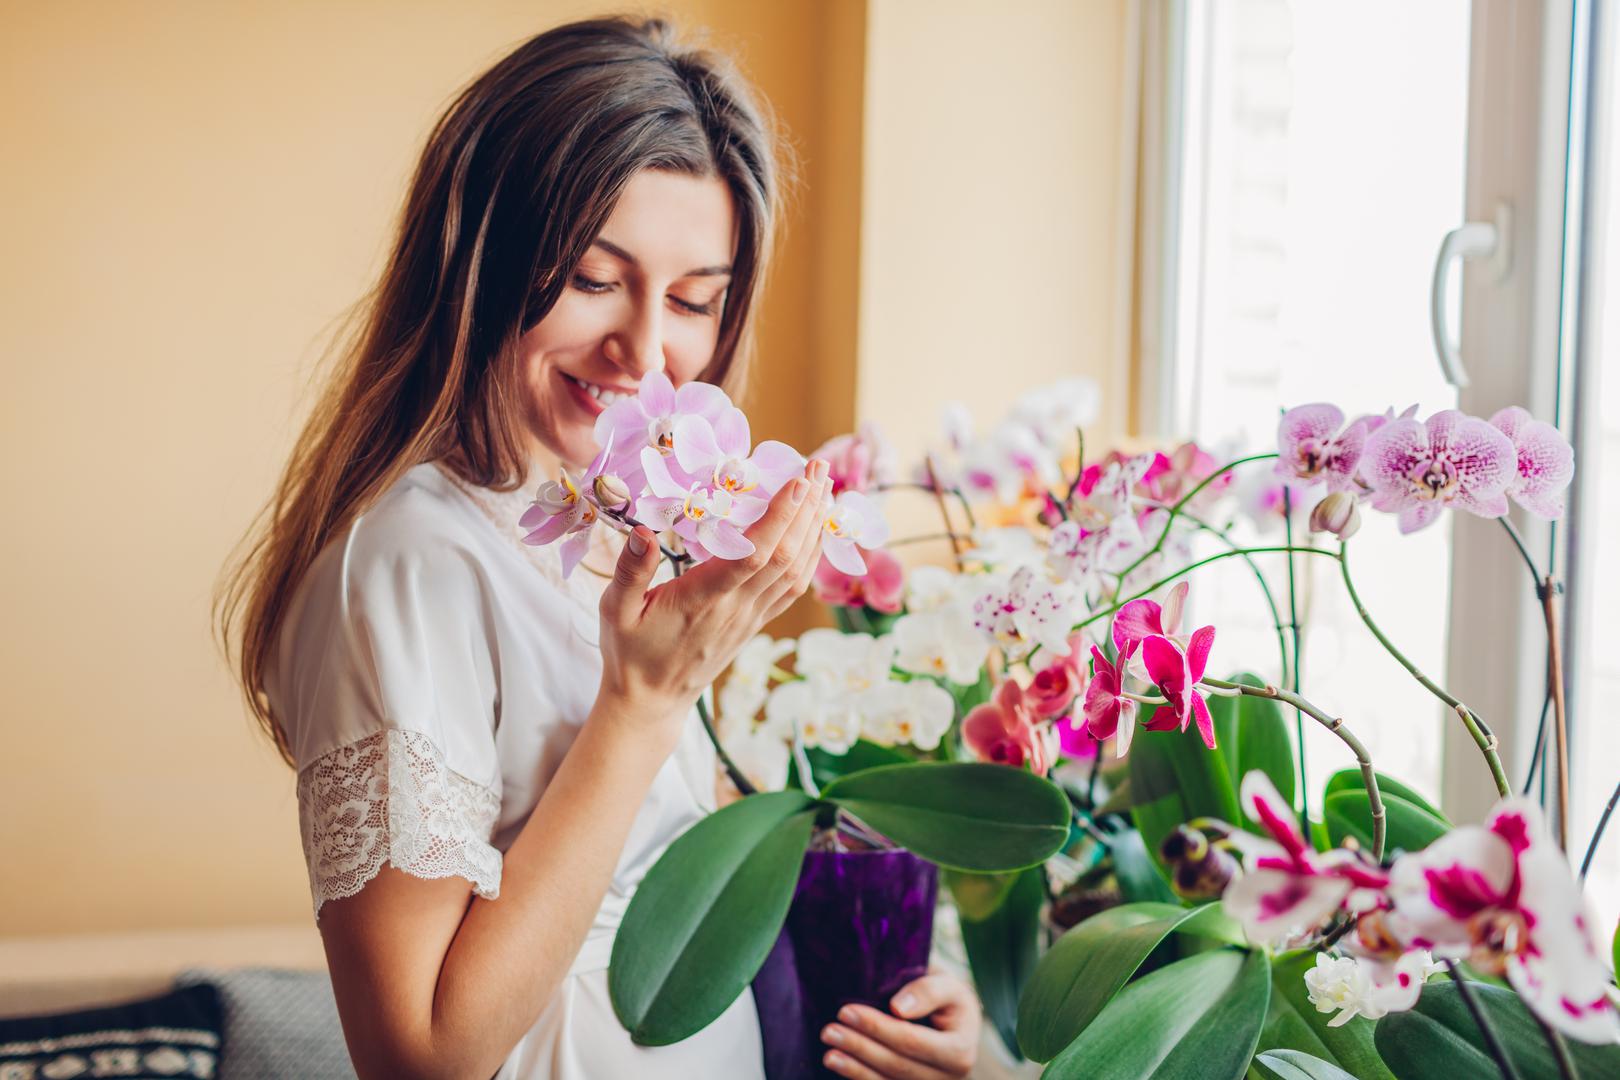 Vodenjak (20. siječnja – 18. veljače) - Orhideje: Orhideje, simbol jedinstvenosti i individualnosti, savršeno odražavaju inovativni duh i nekonvencionalni stil Vodenjaka. Ove biljke dodaju ekskluzivnost i ljepotu u vrt te odražavaju Vodenjakovu želju za originalnošću.